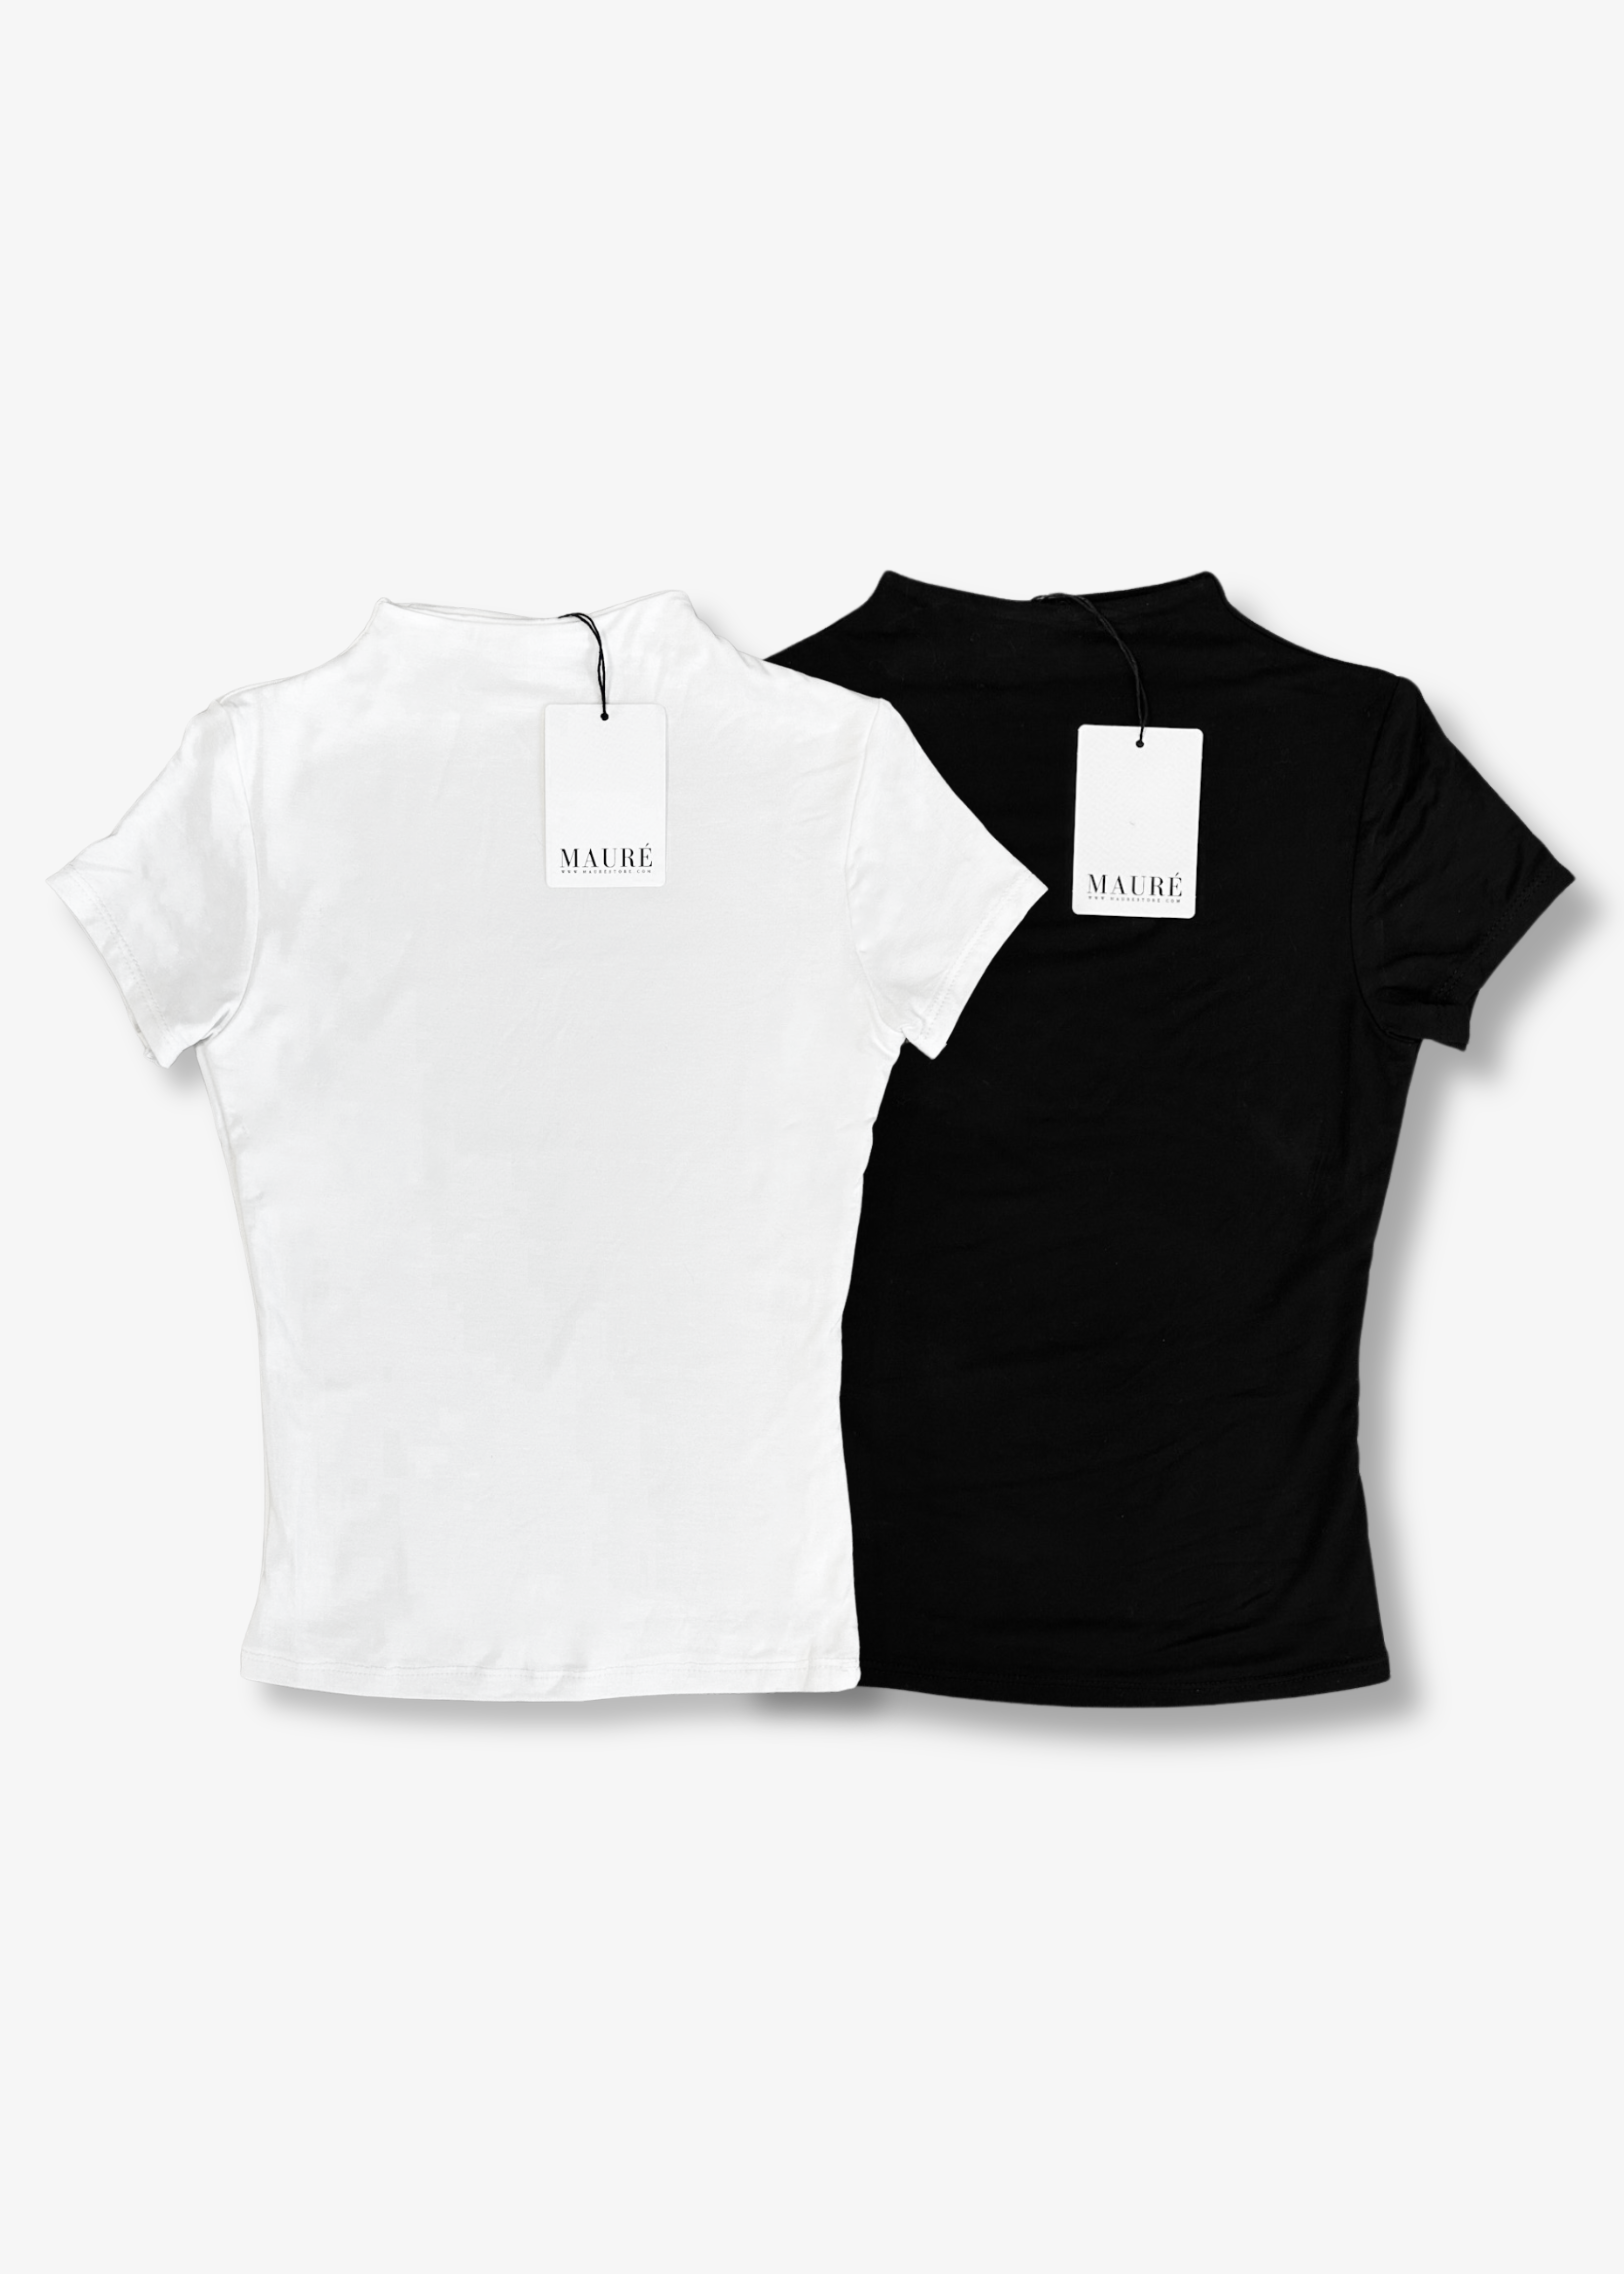 2-pack short sleeve tops long White & black